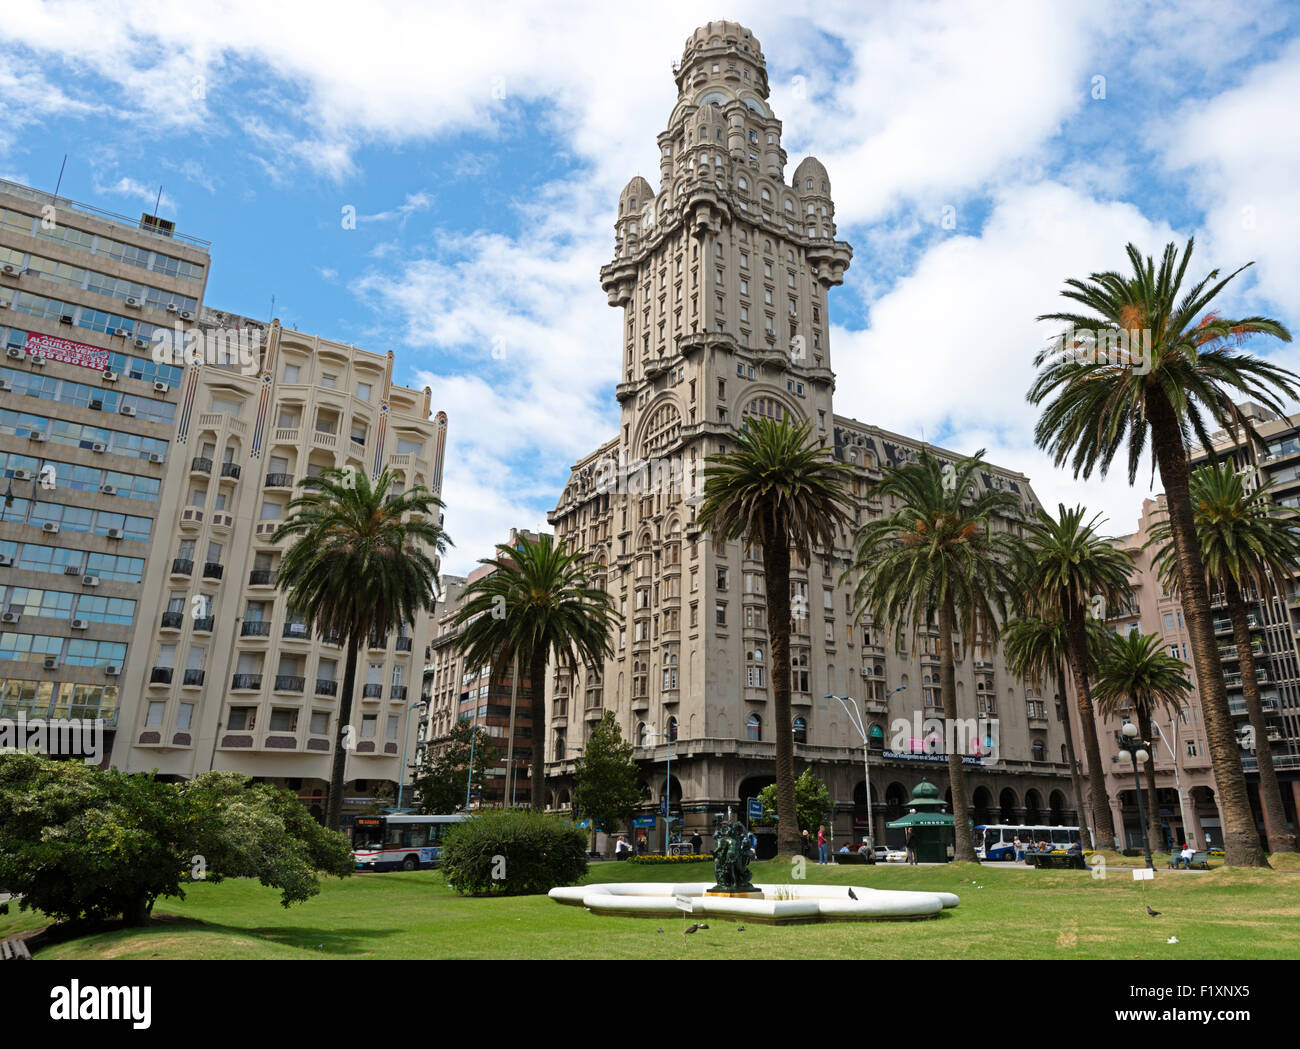 Montevideo, Uruguay, Palacio Salvo Stock Photo